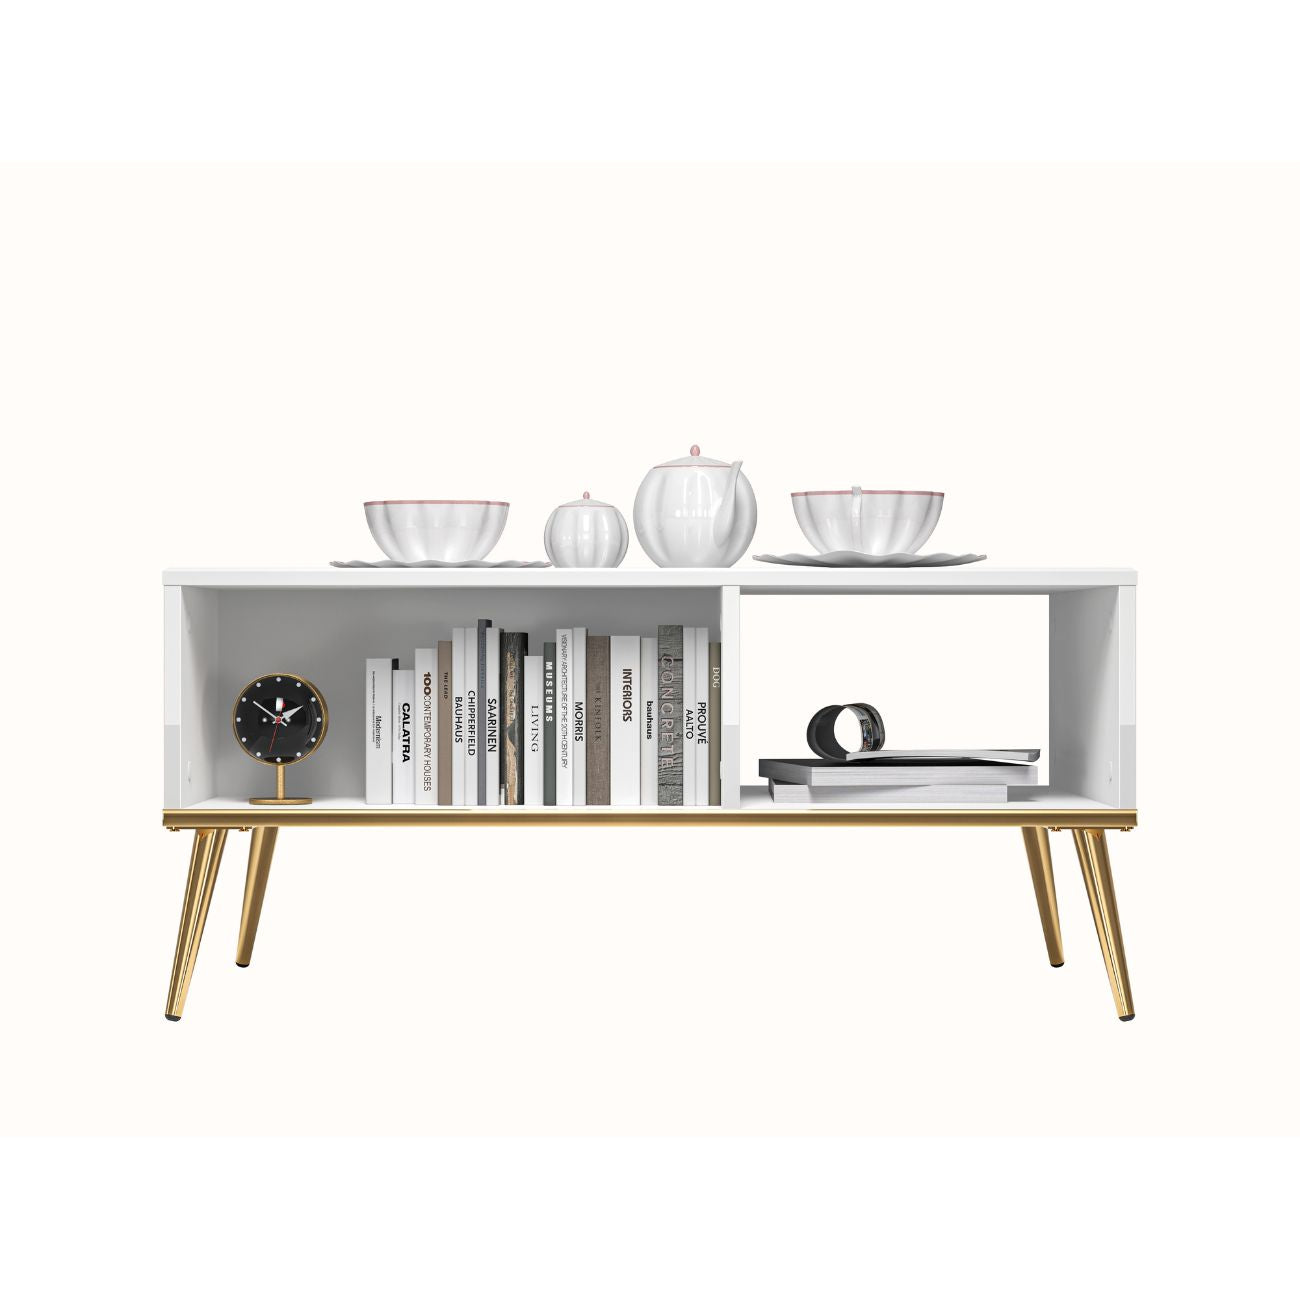 Zdjęcie przedstawiające nowoczesny stolik kawowy z zaaranżowanymi półkami. Stolik kawowy 90x60 cm sprawdzi się w Twoim salonie